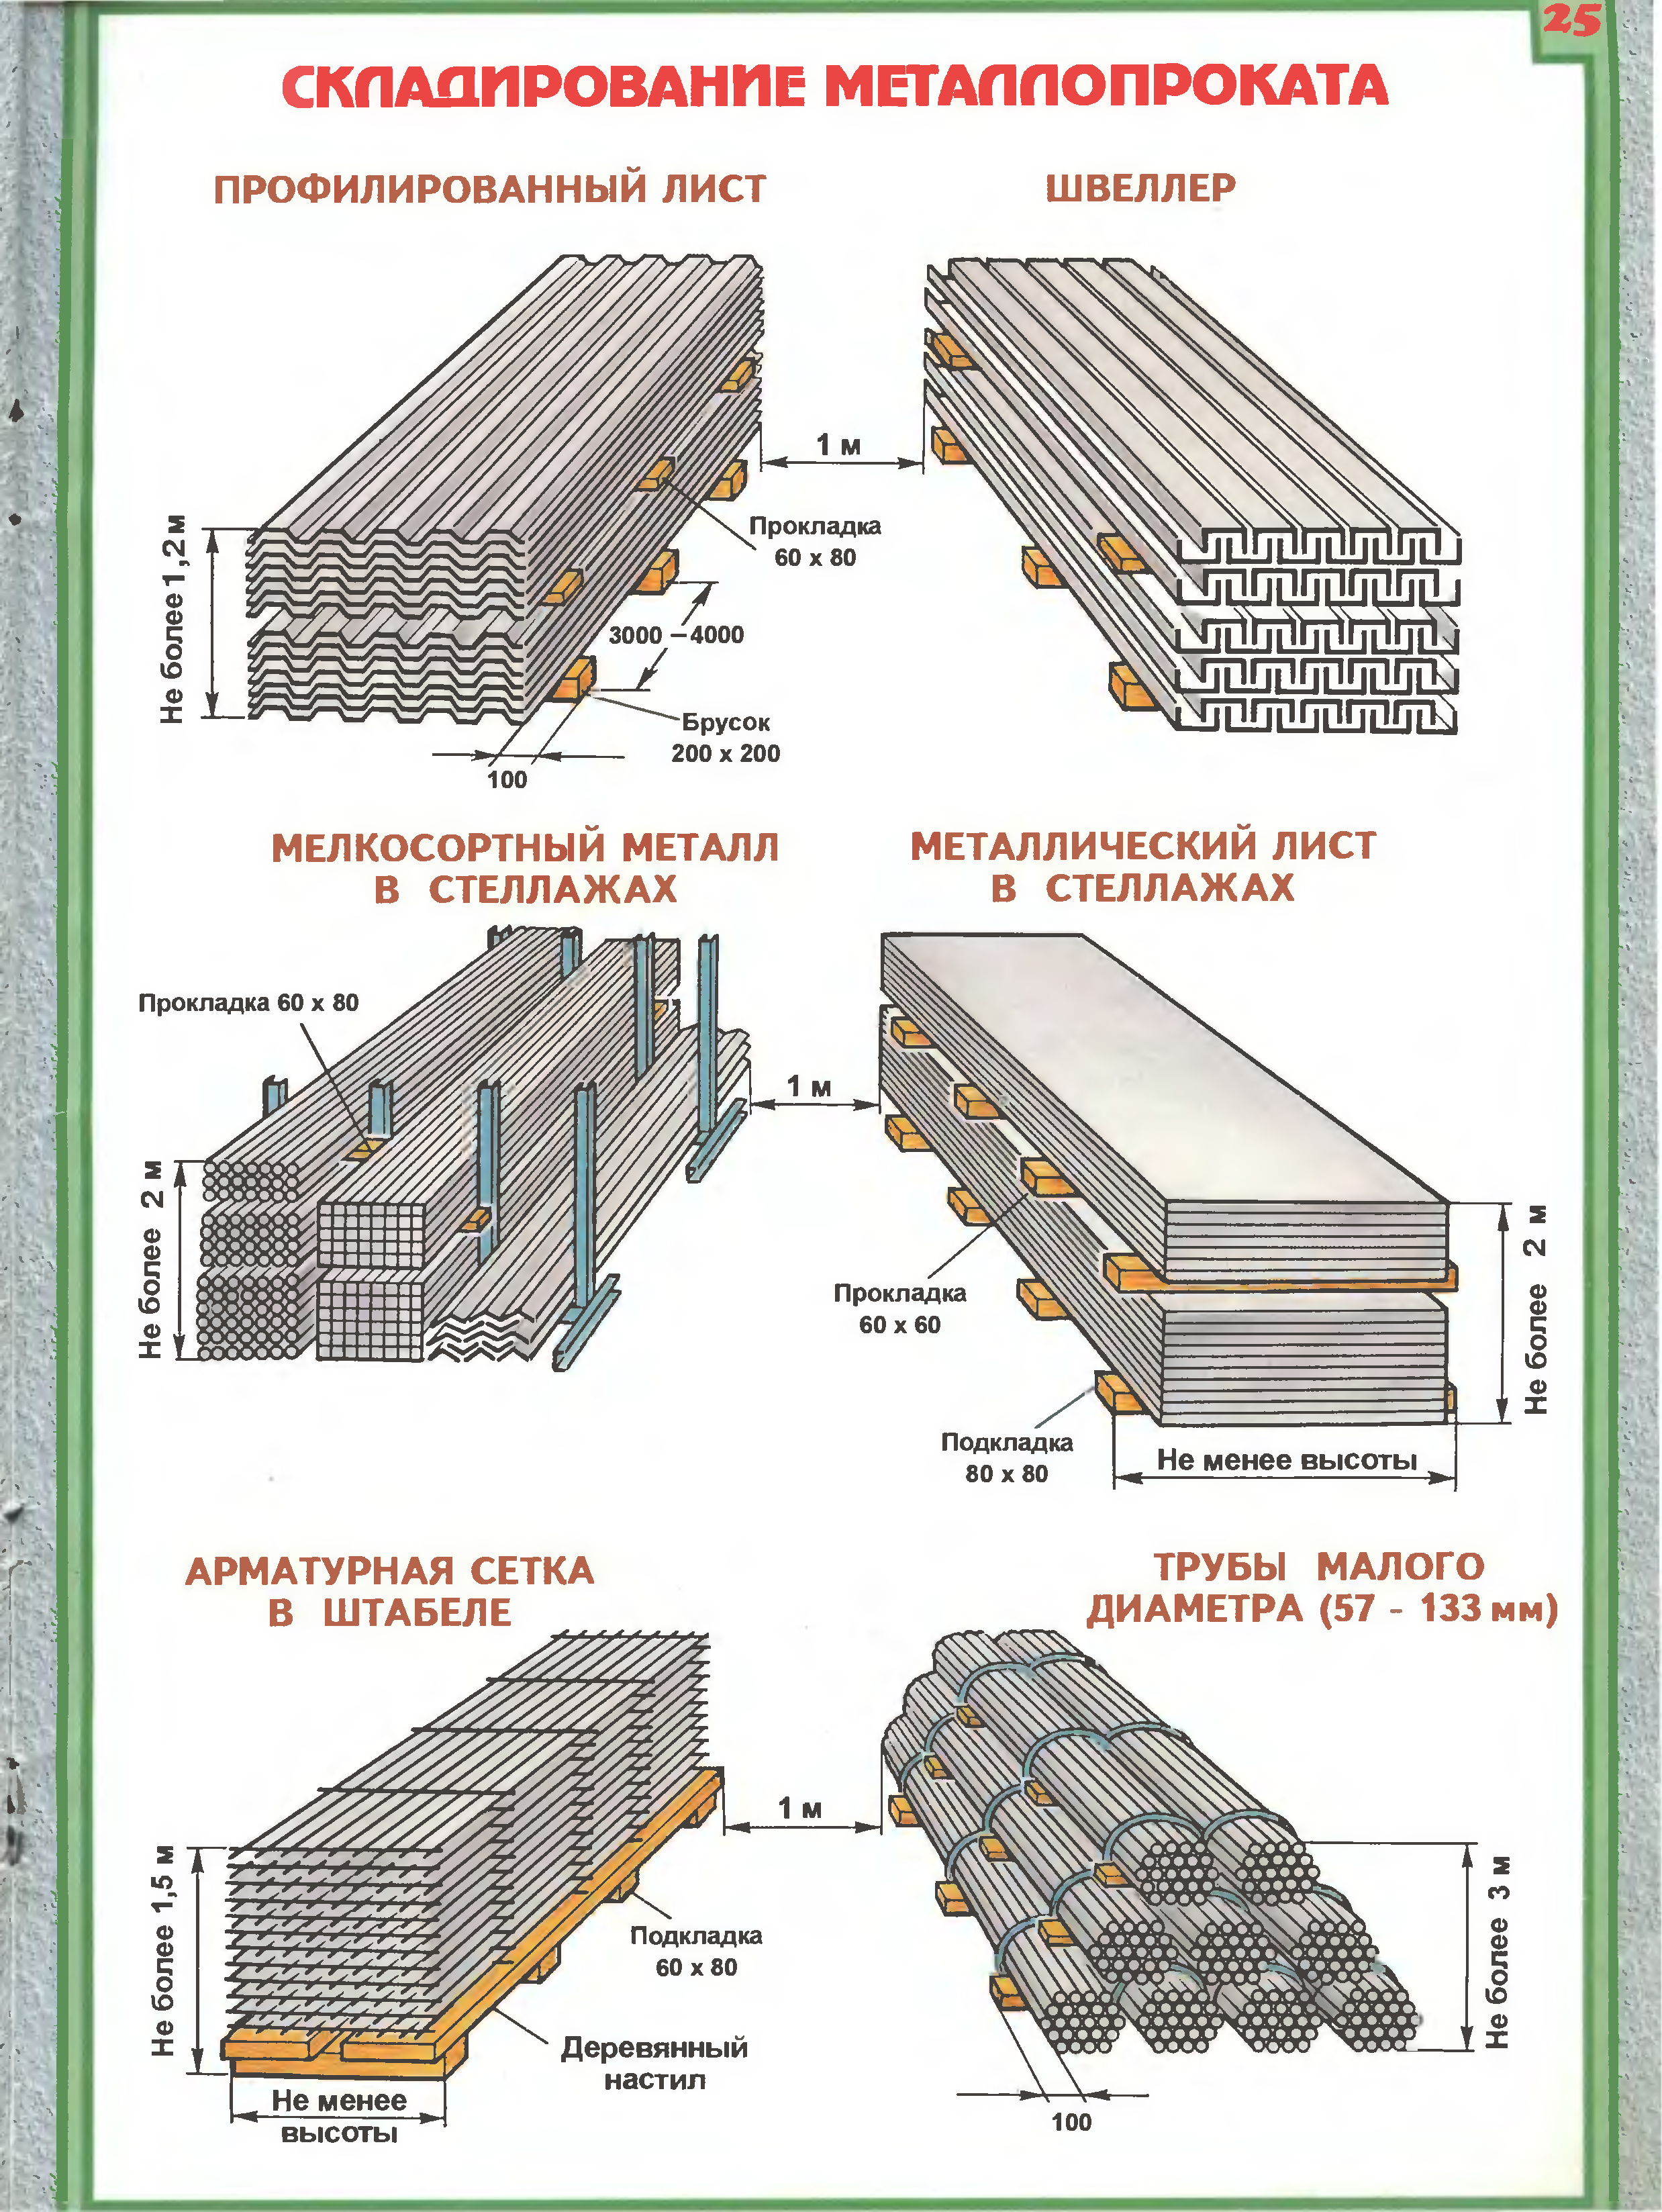 Гребень под погрузку. Схема складирования арматуры на стройплощадке. Схема складирования двутавровых балок. Схема складирования металлических листов. Схема складирования листового металла.